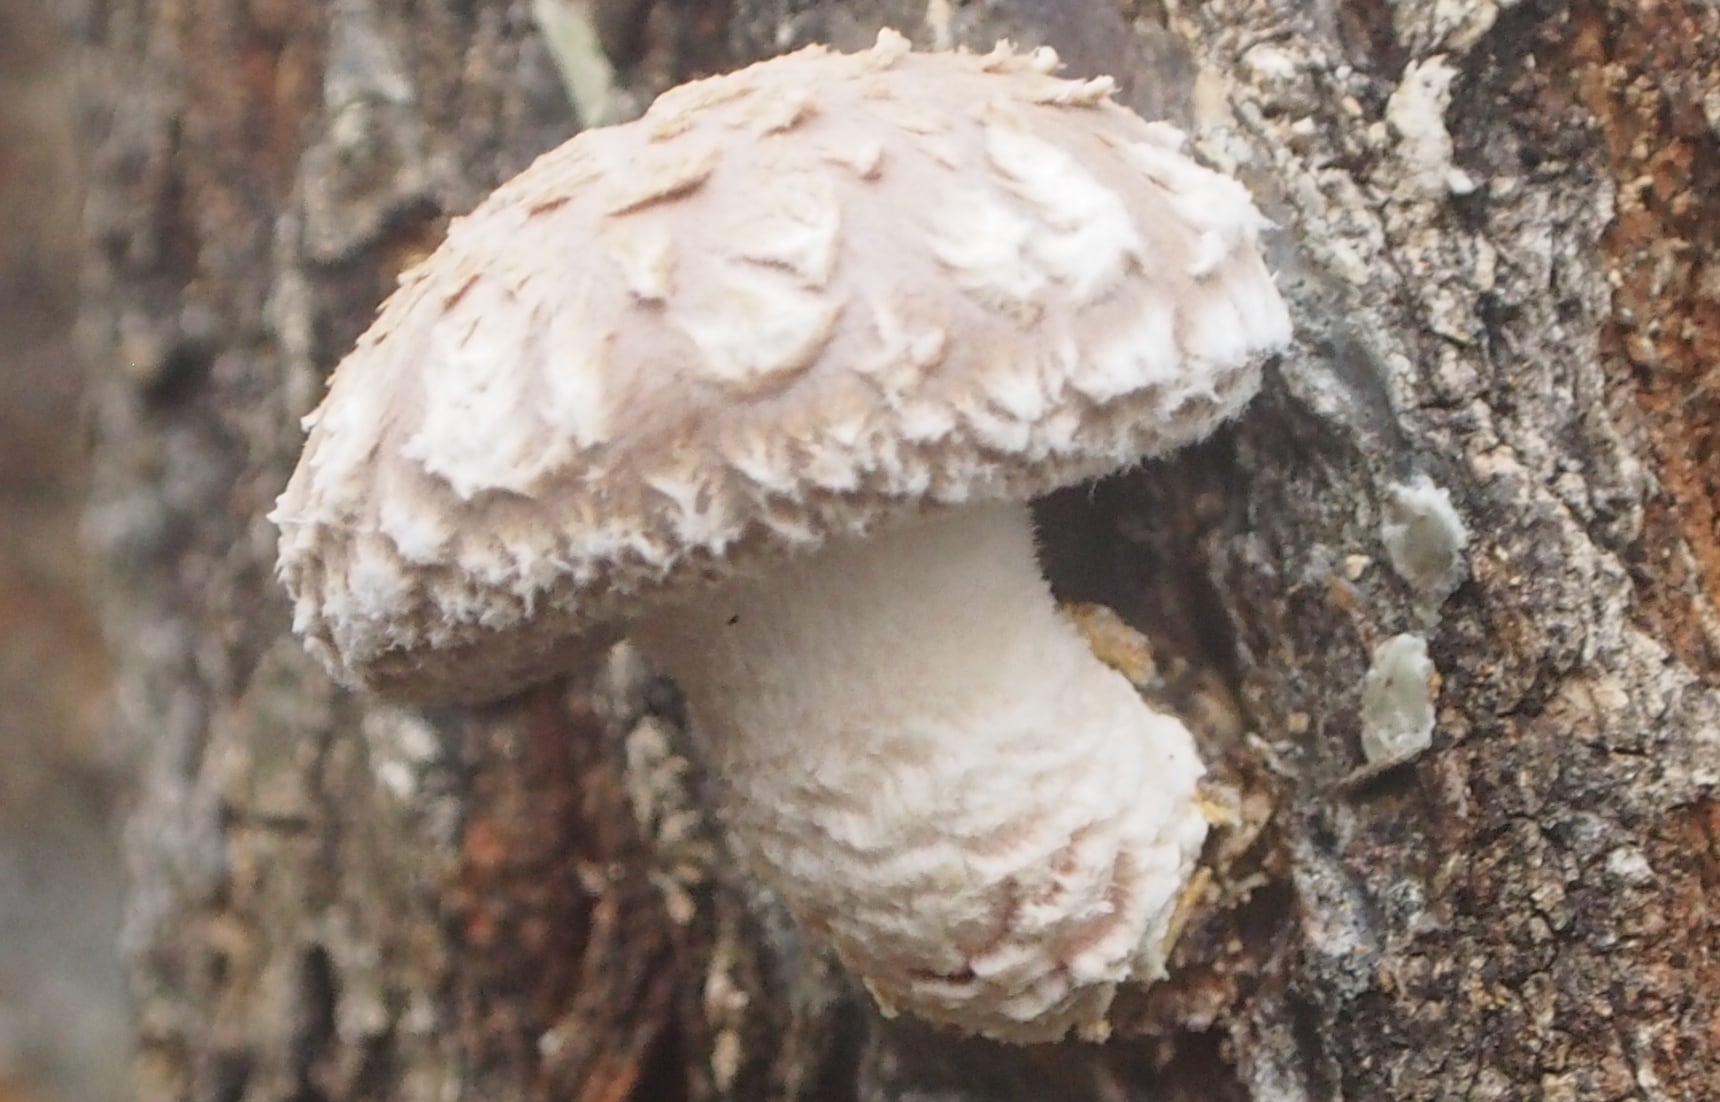 We Eat Mushrooms, But What Do Mushrooms Eat?